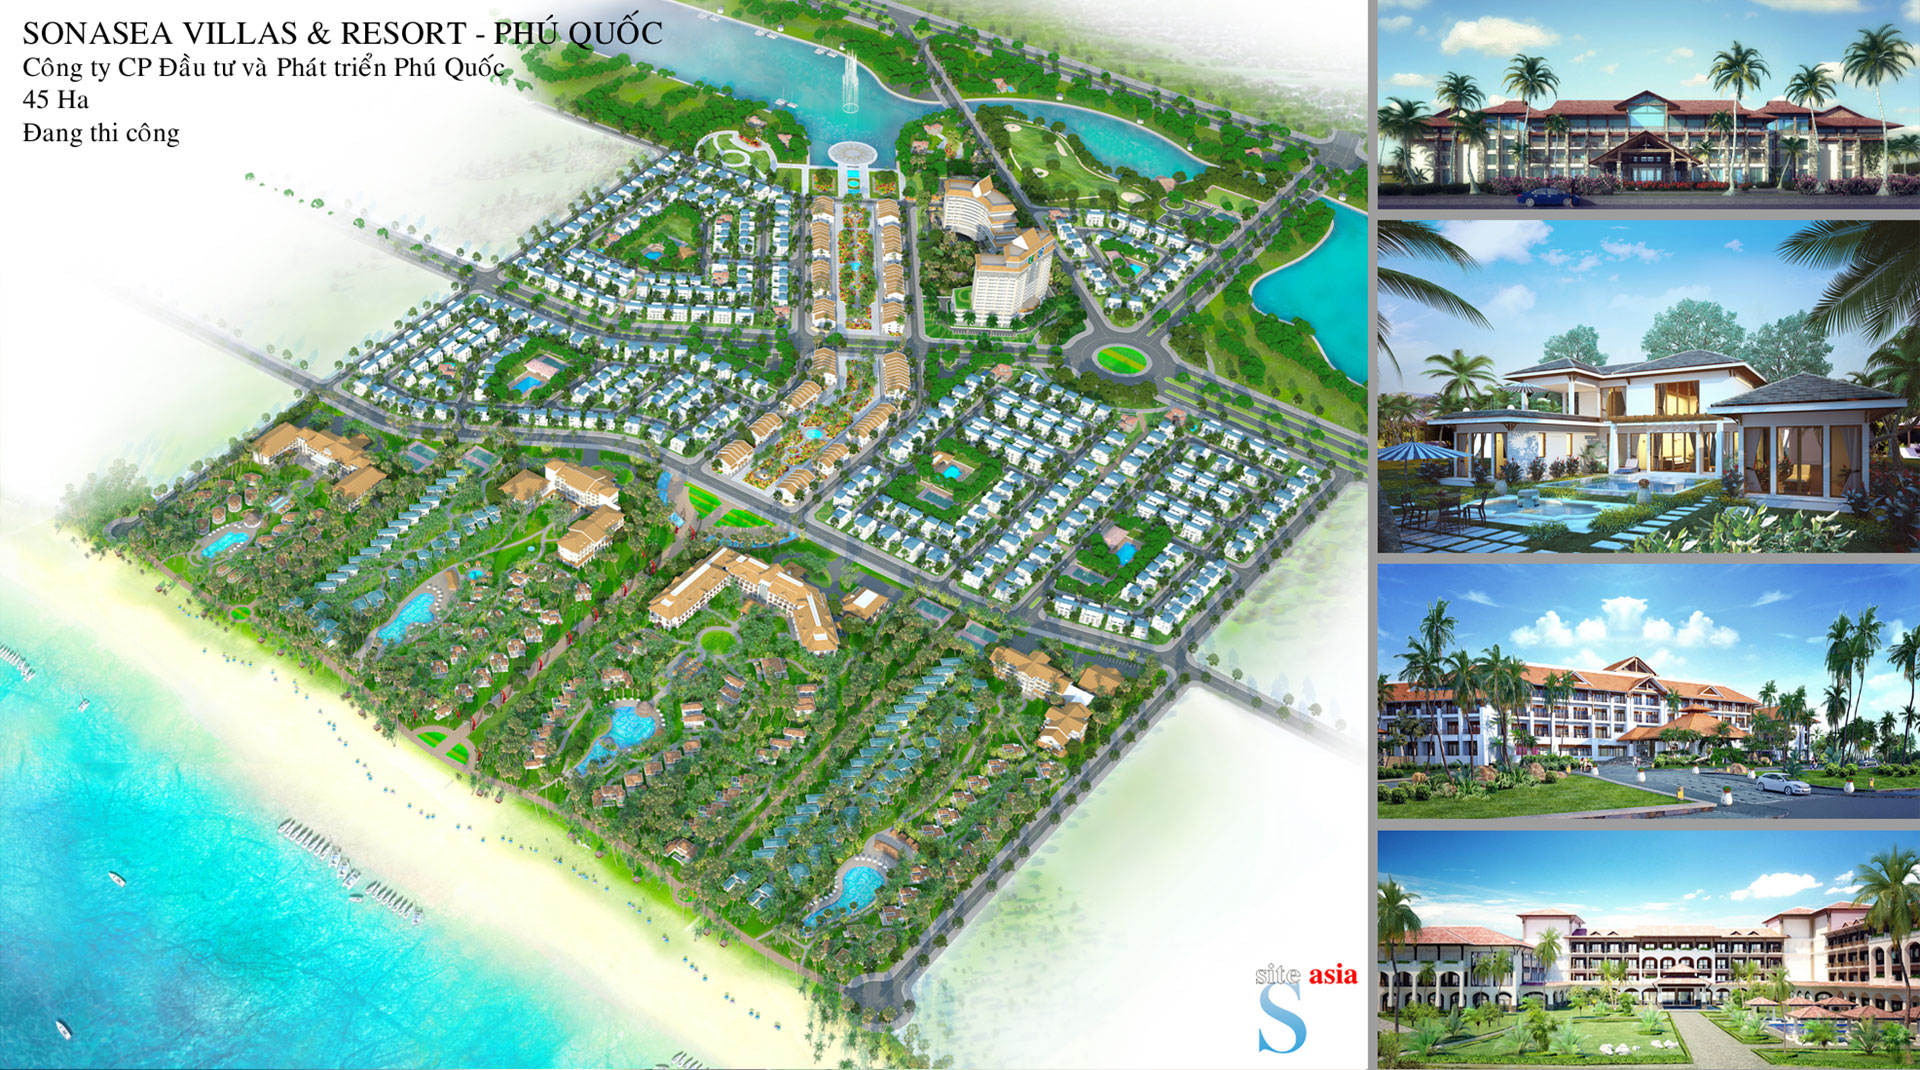 Sonasea Villas & Resort, Phú Quốc